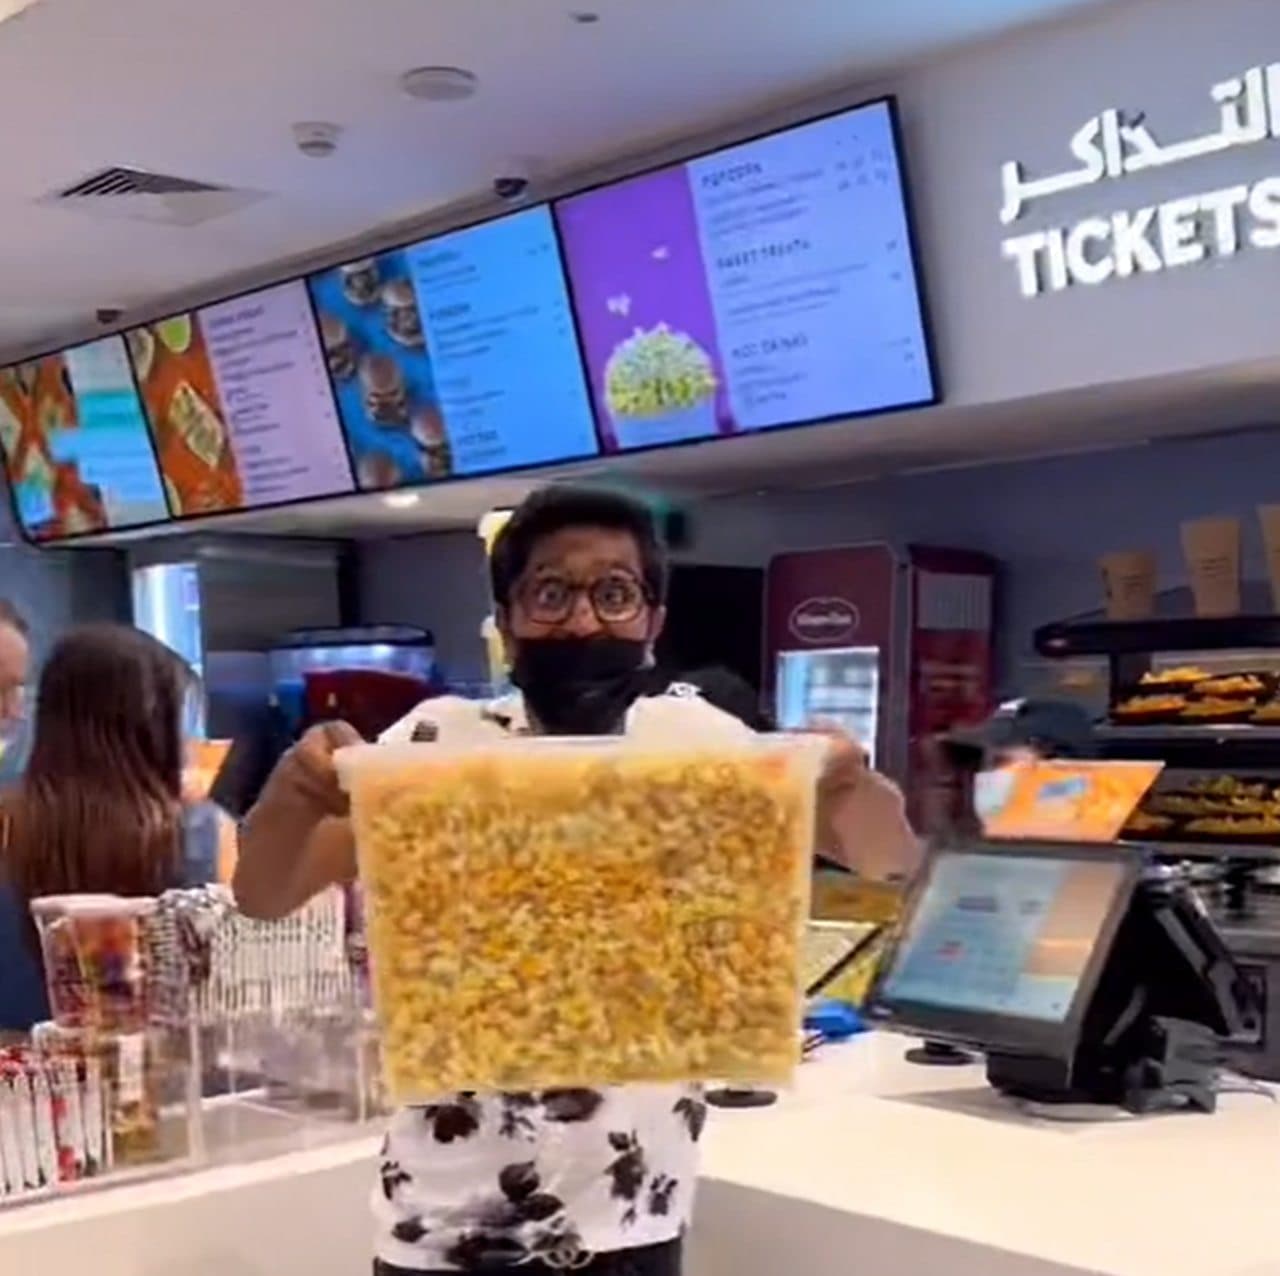 衣装ケース一杯のポップコーンを食べられる VOX CINEMA UAEが日曜限定のサービスを実施中